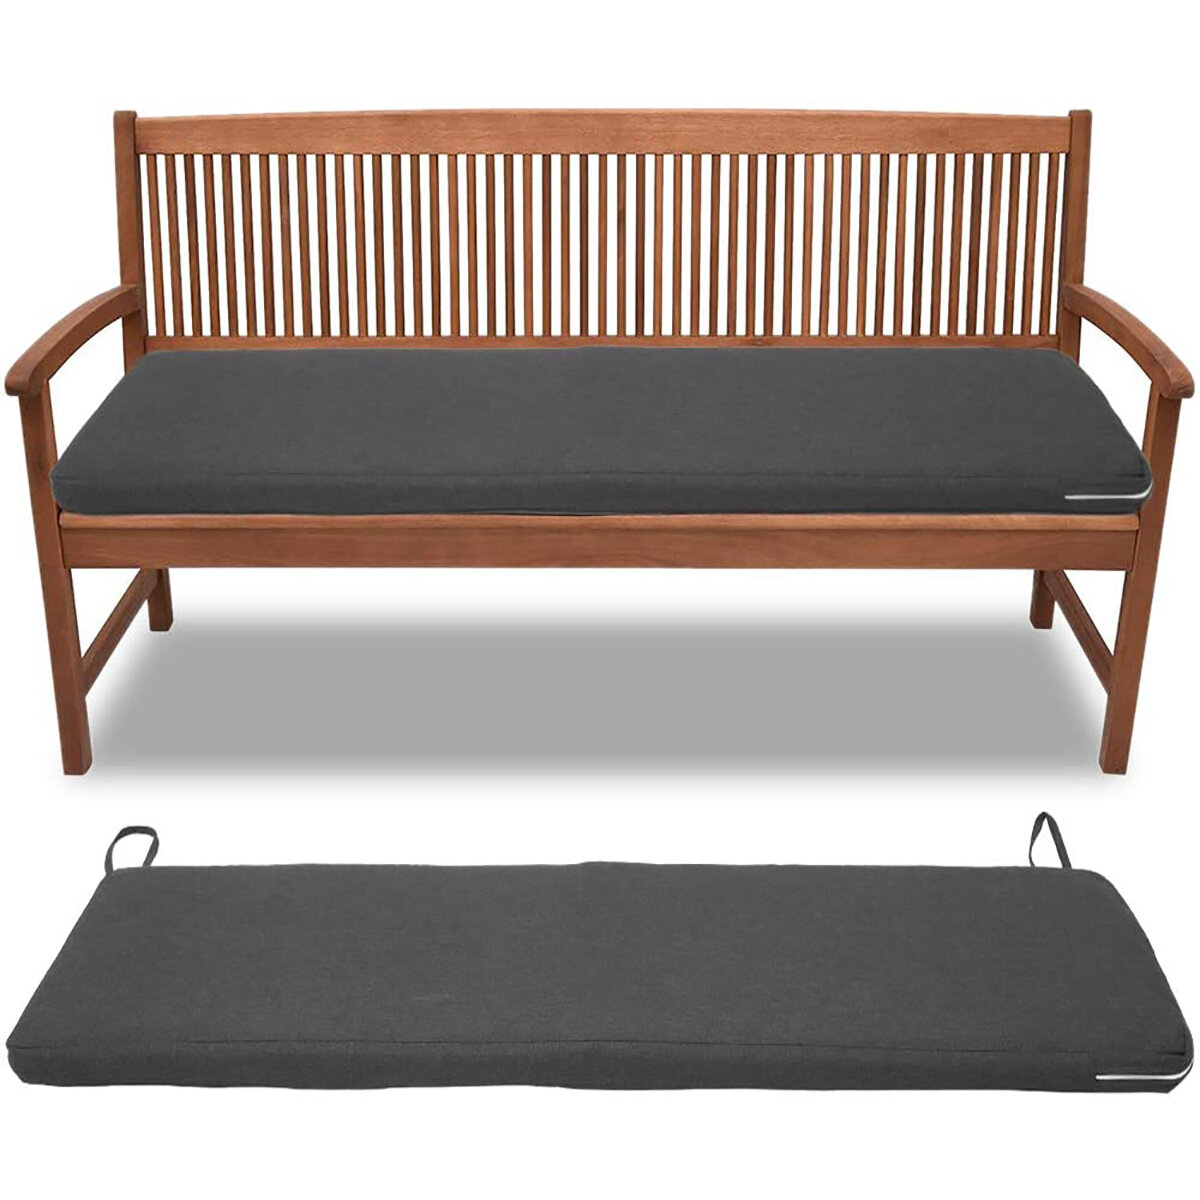 Cojín para silla de exterior Impermeable Alfombrilla para asiento de banco Soft Cojines largos para silla cámping Muebles de jardín y patio